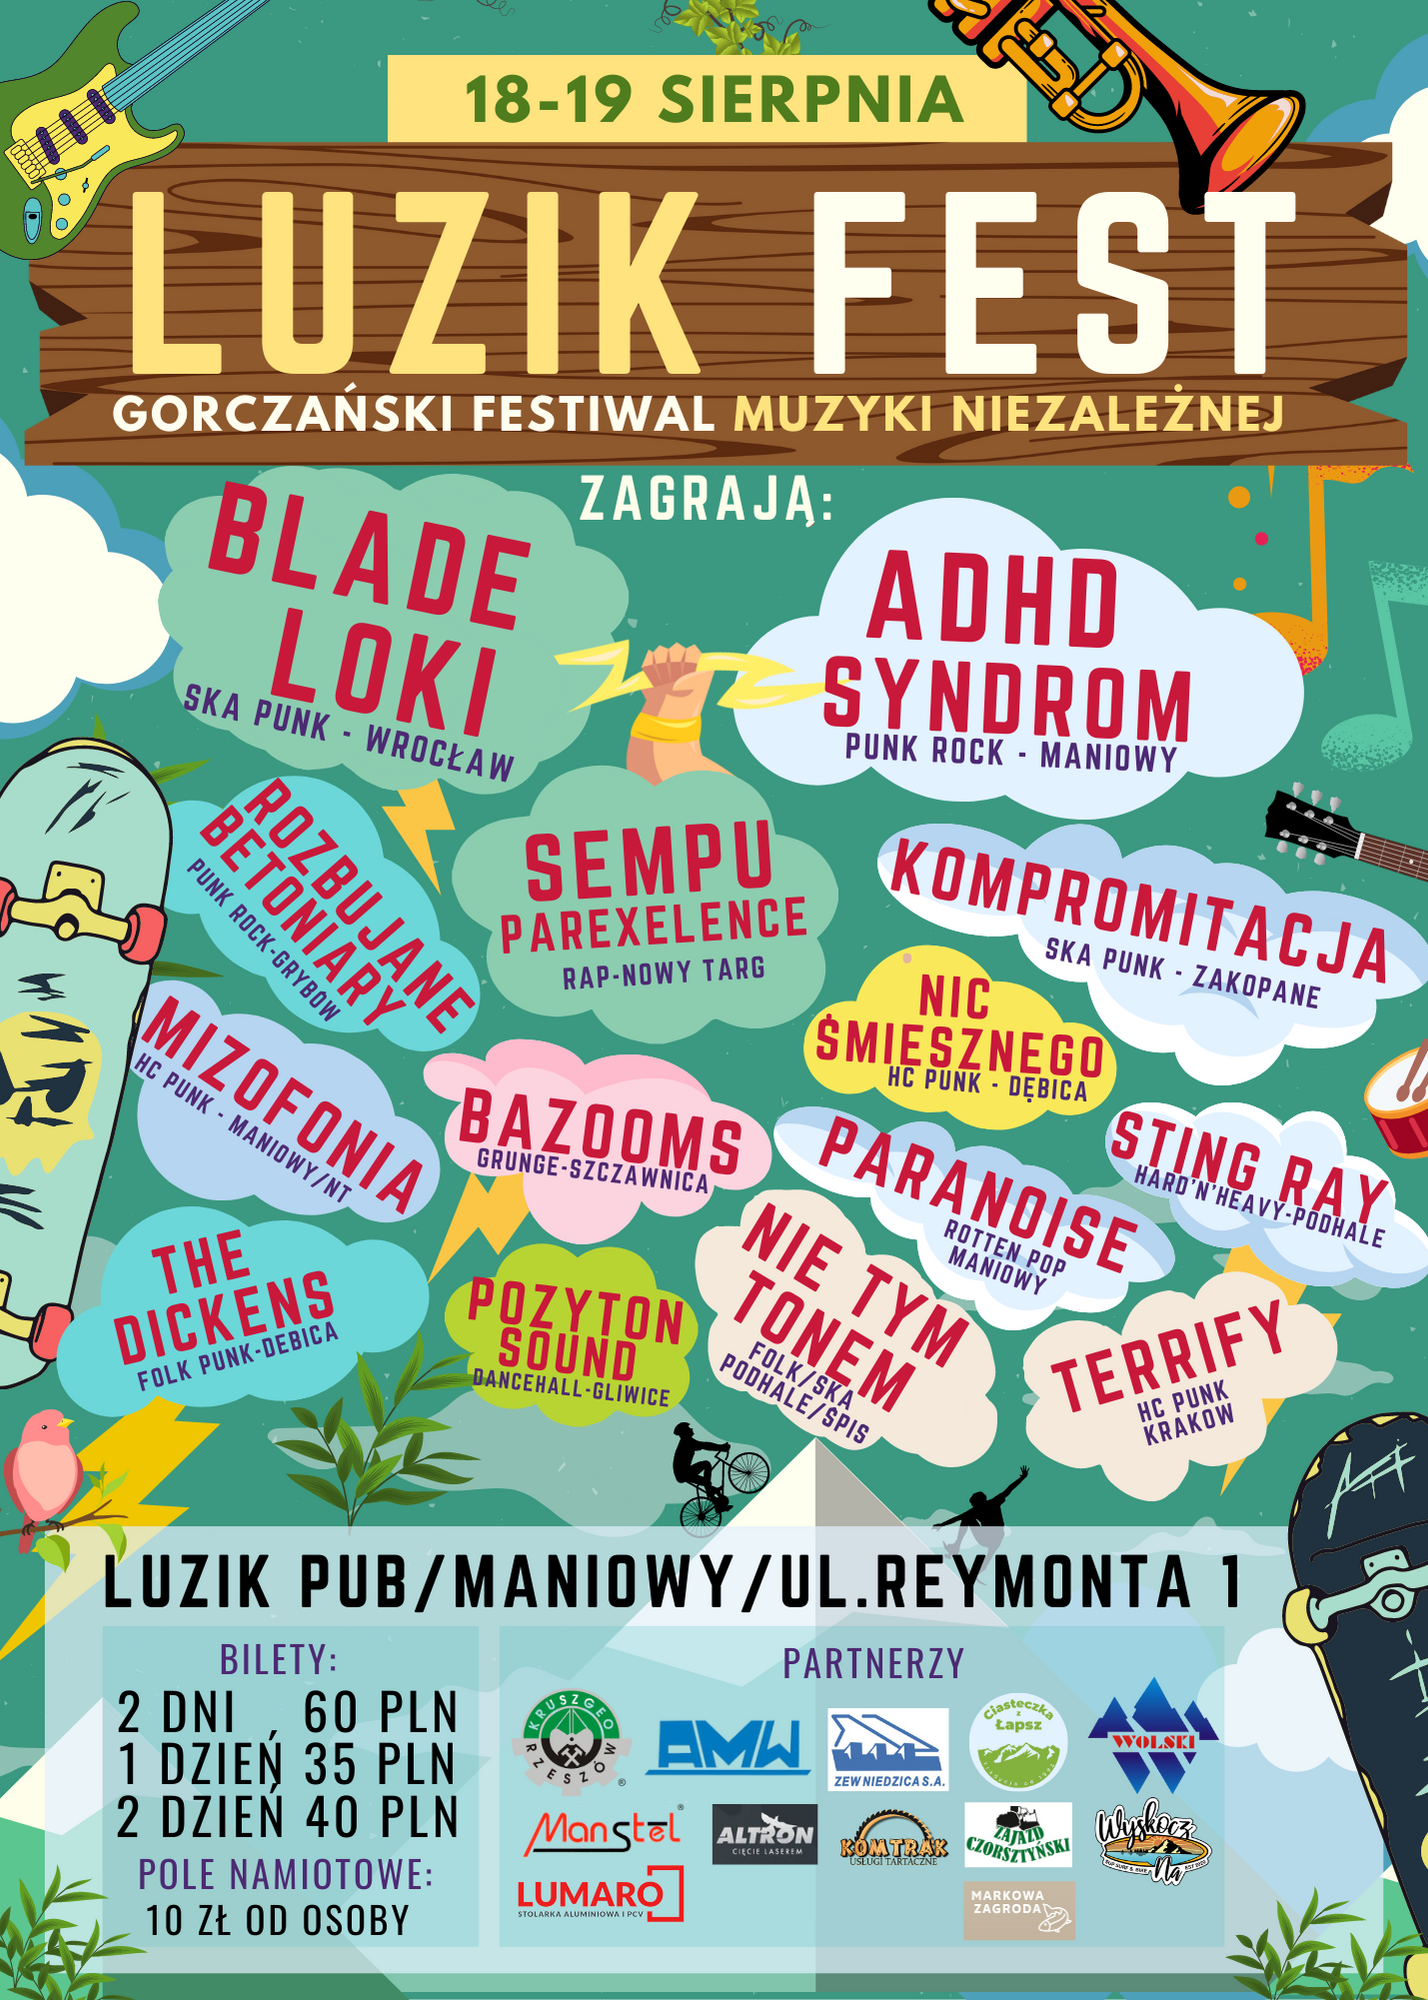 Zbliża się Luzik Fest - Gorczański Festiwal Muzyki Niezależnej